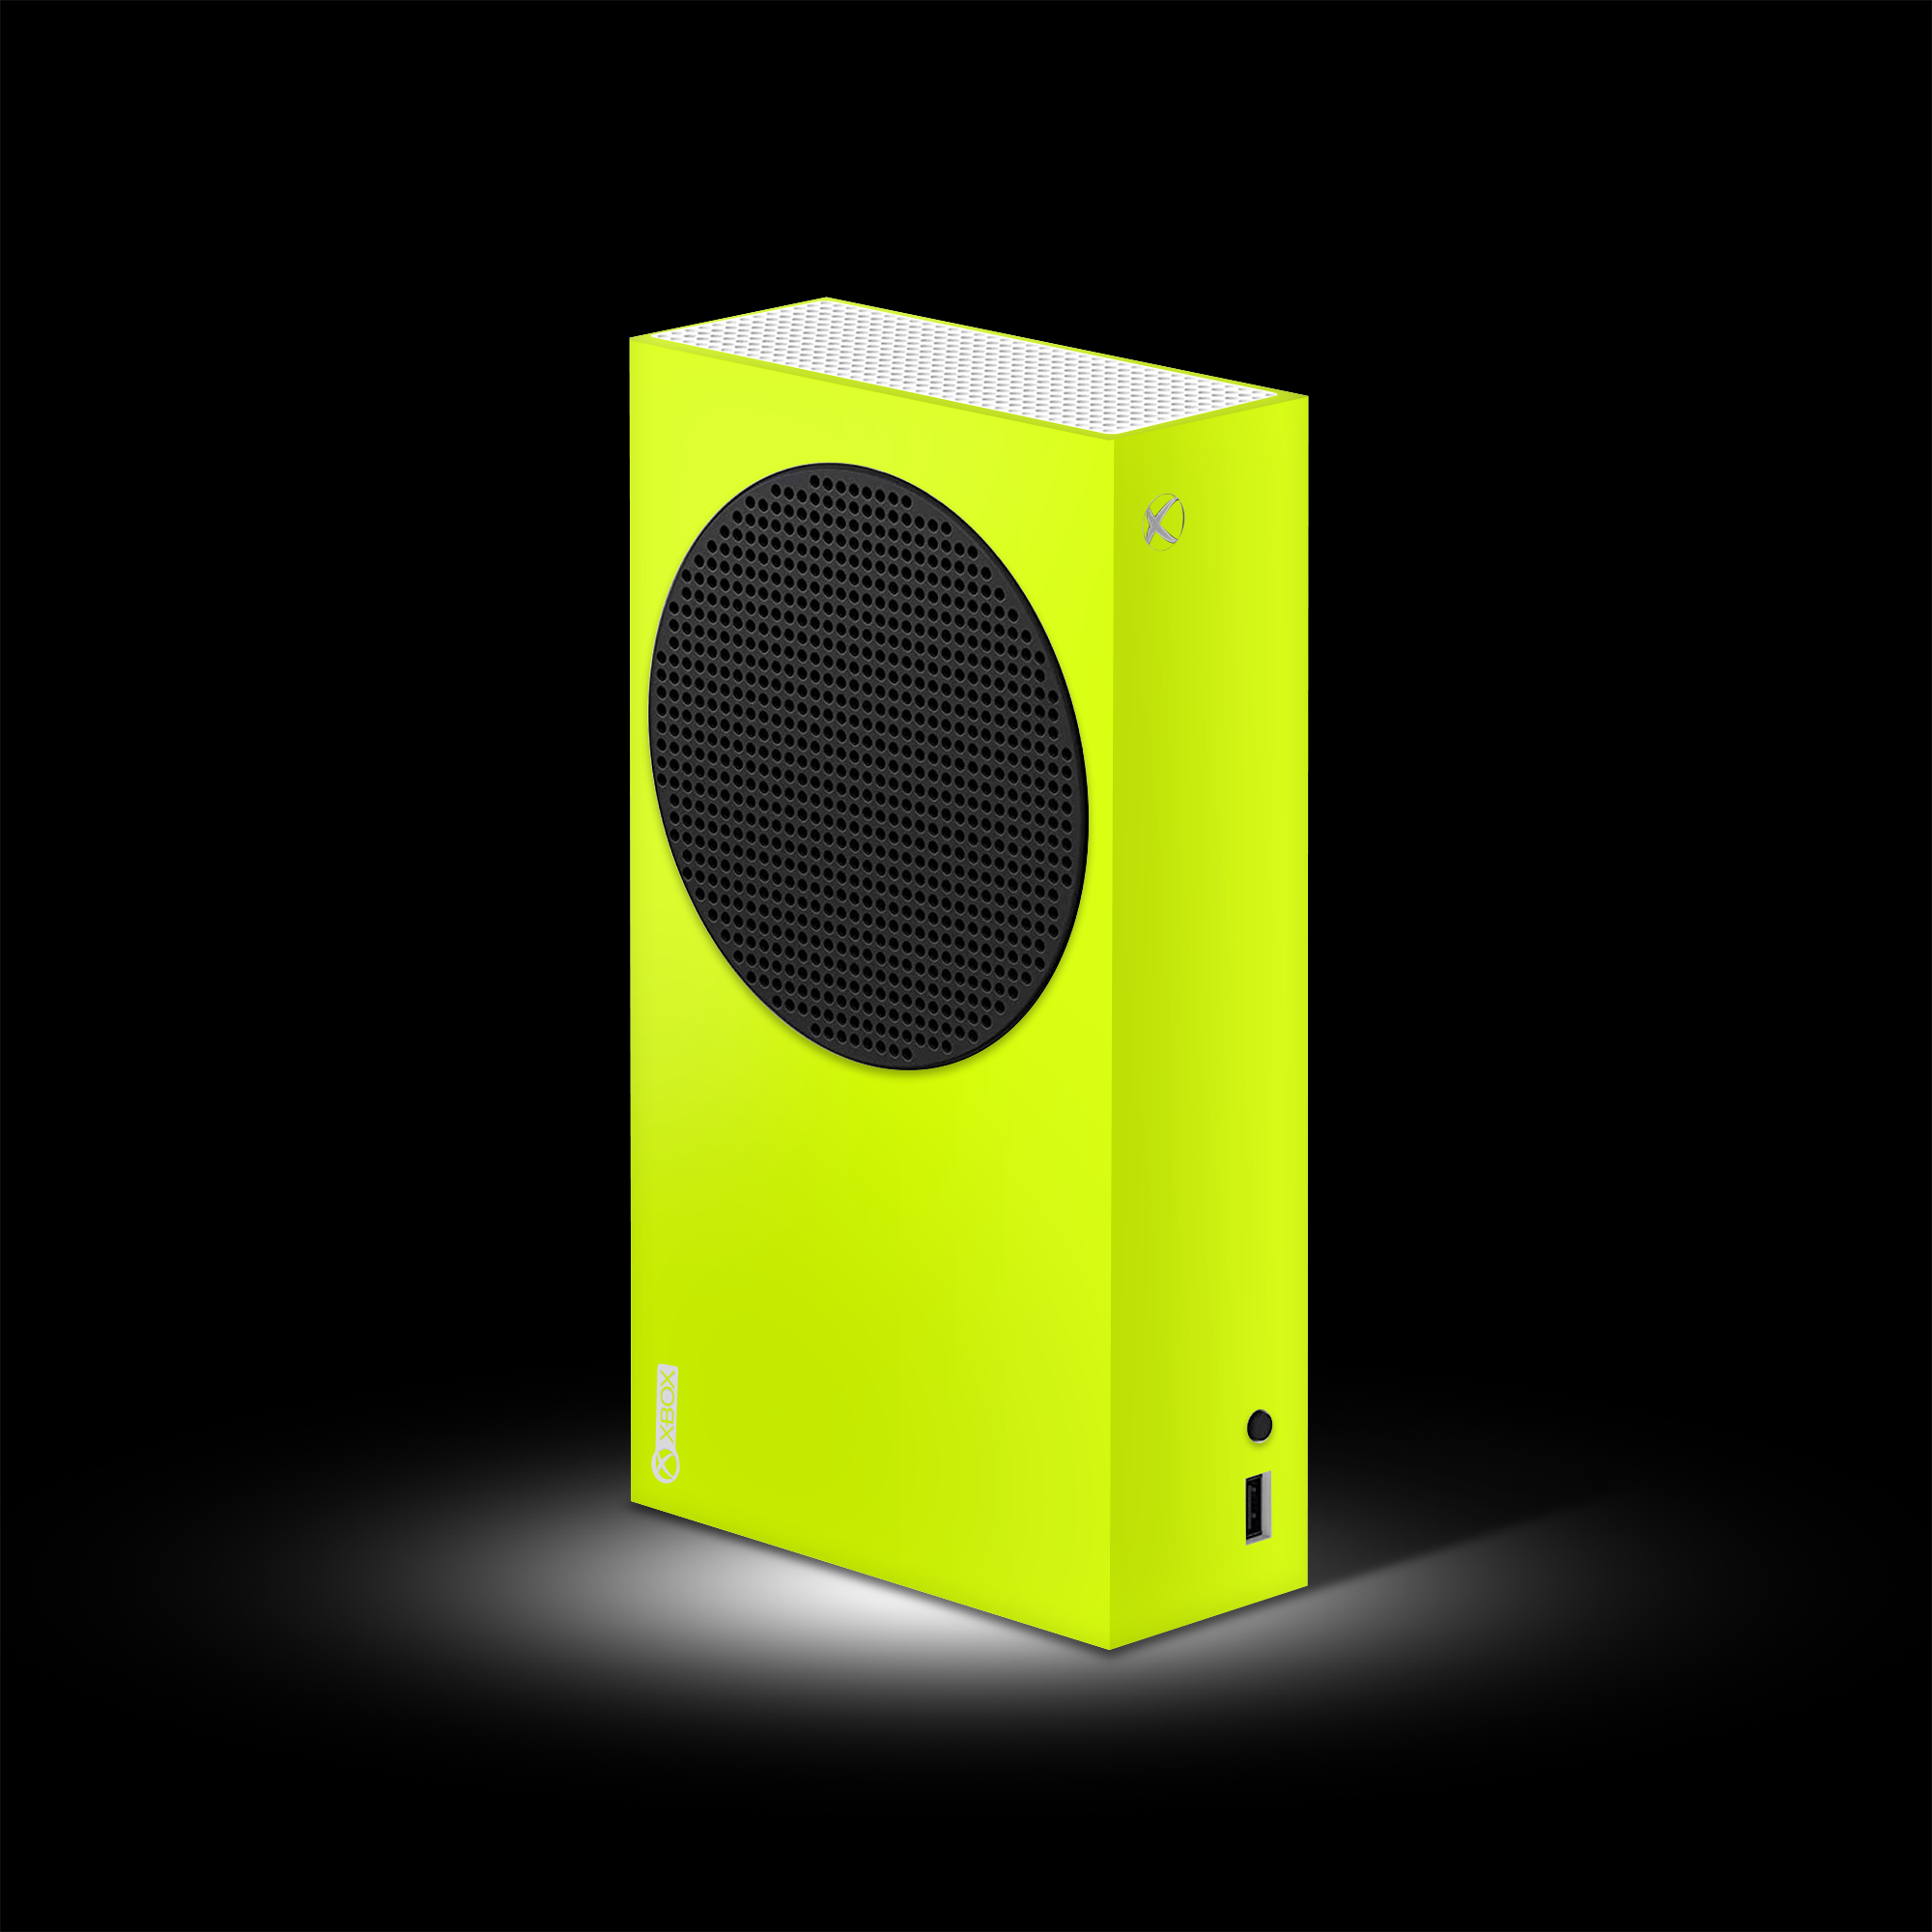 Neon Yellow (Xbox S Skin)